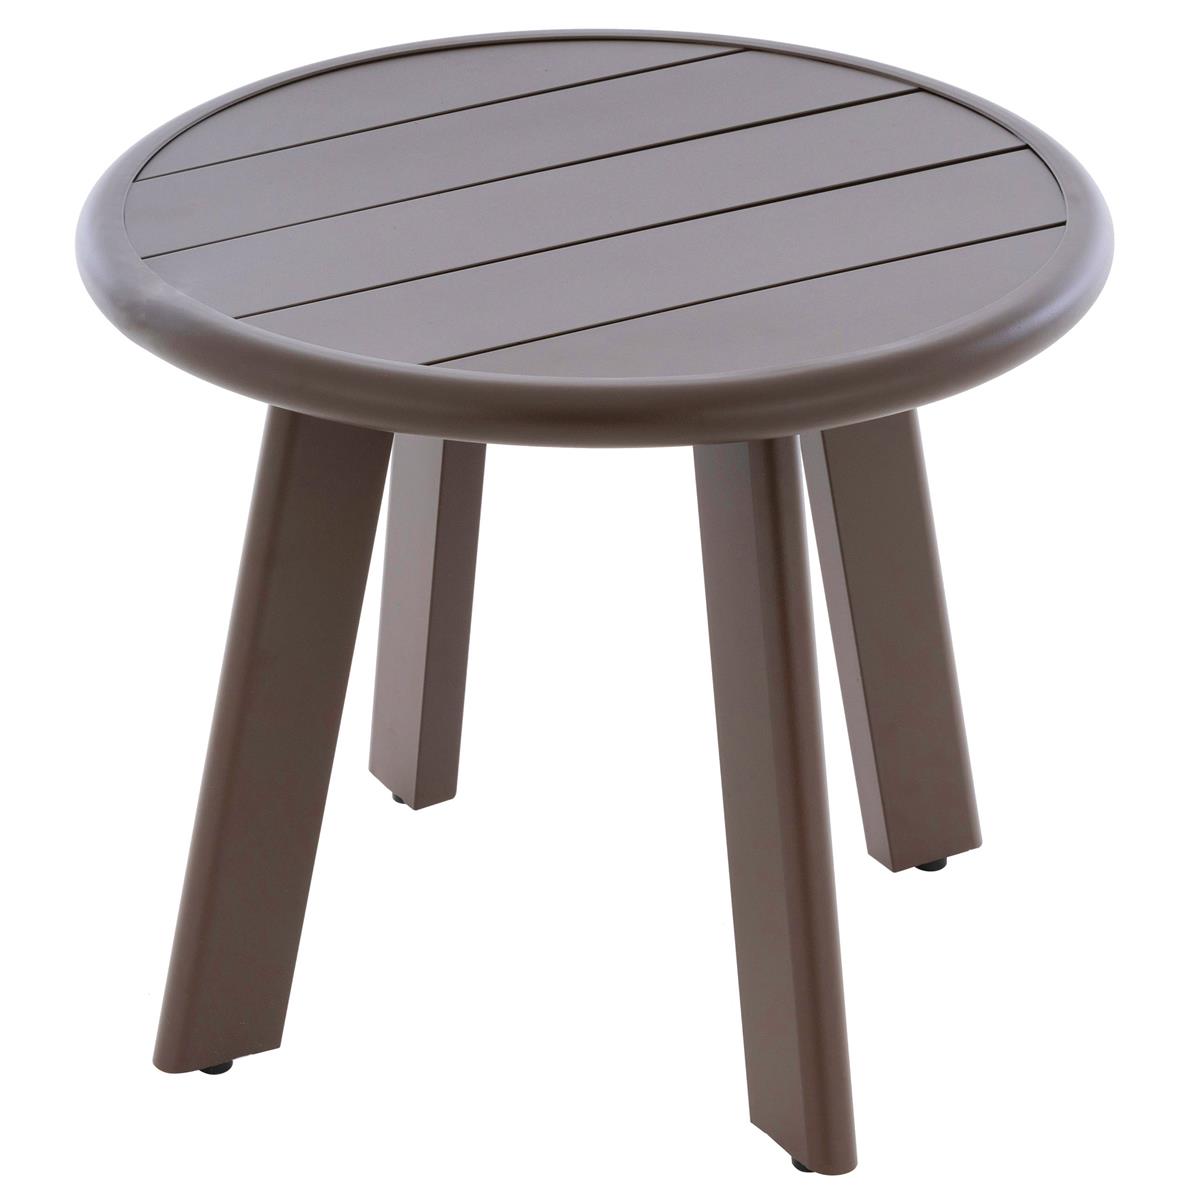 Beistell-Tisch Aluminium Farbe dunkel-braun Terrassentisch Veranda-Tisch  52,5 cm